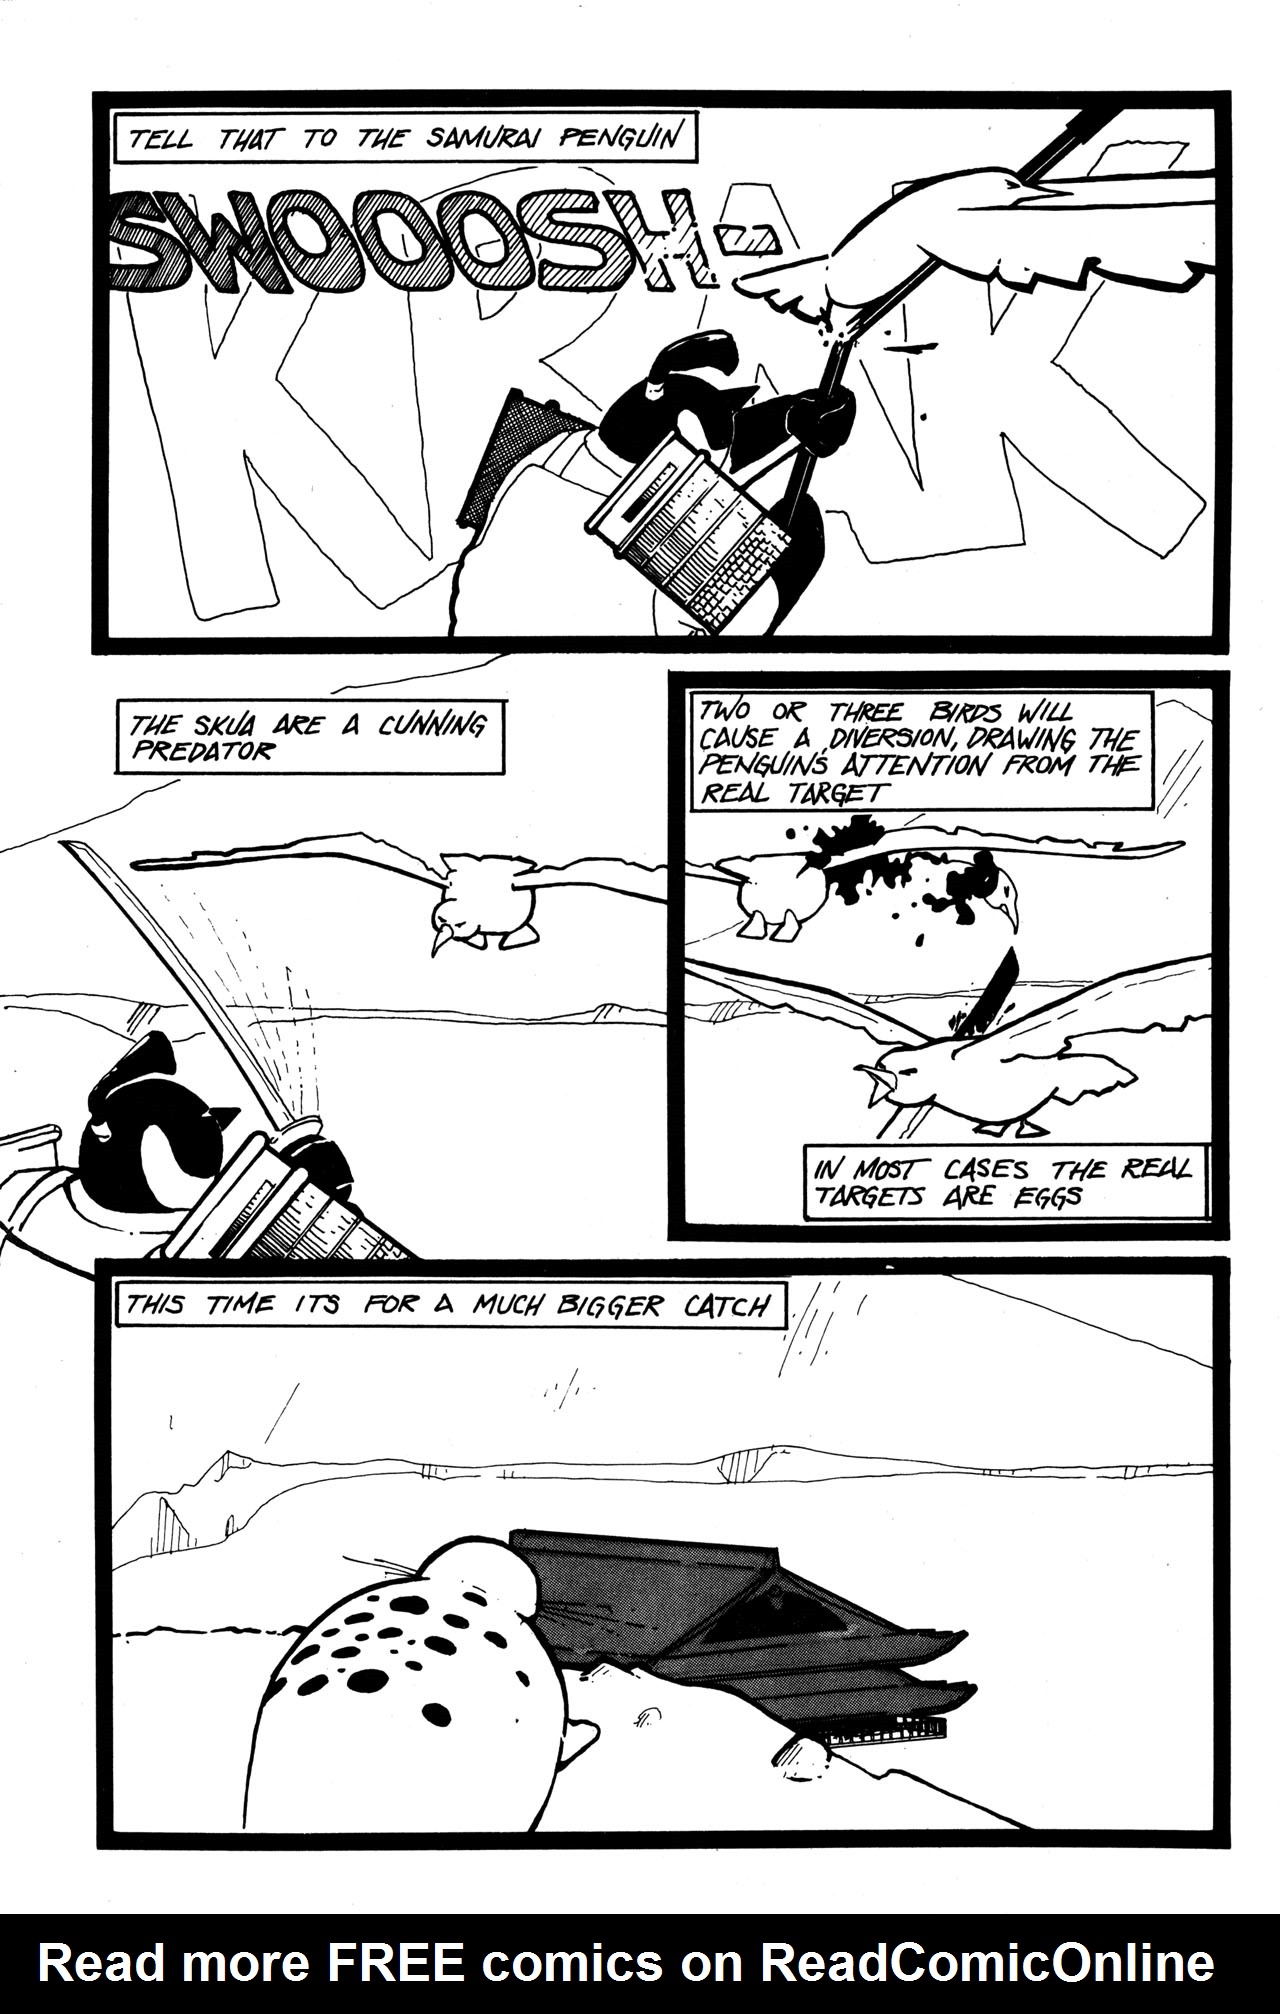 Read online Samurai Penguin comic -  Issue #1 - 20